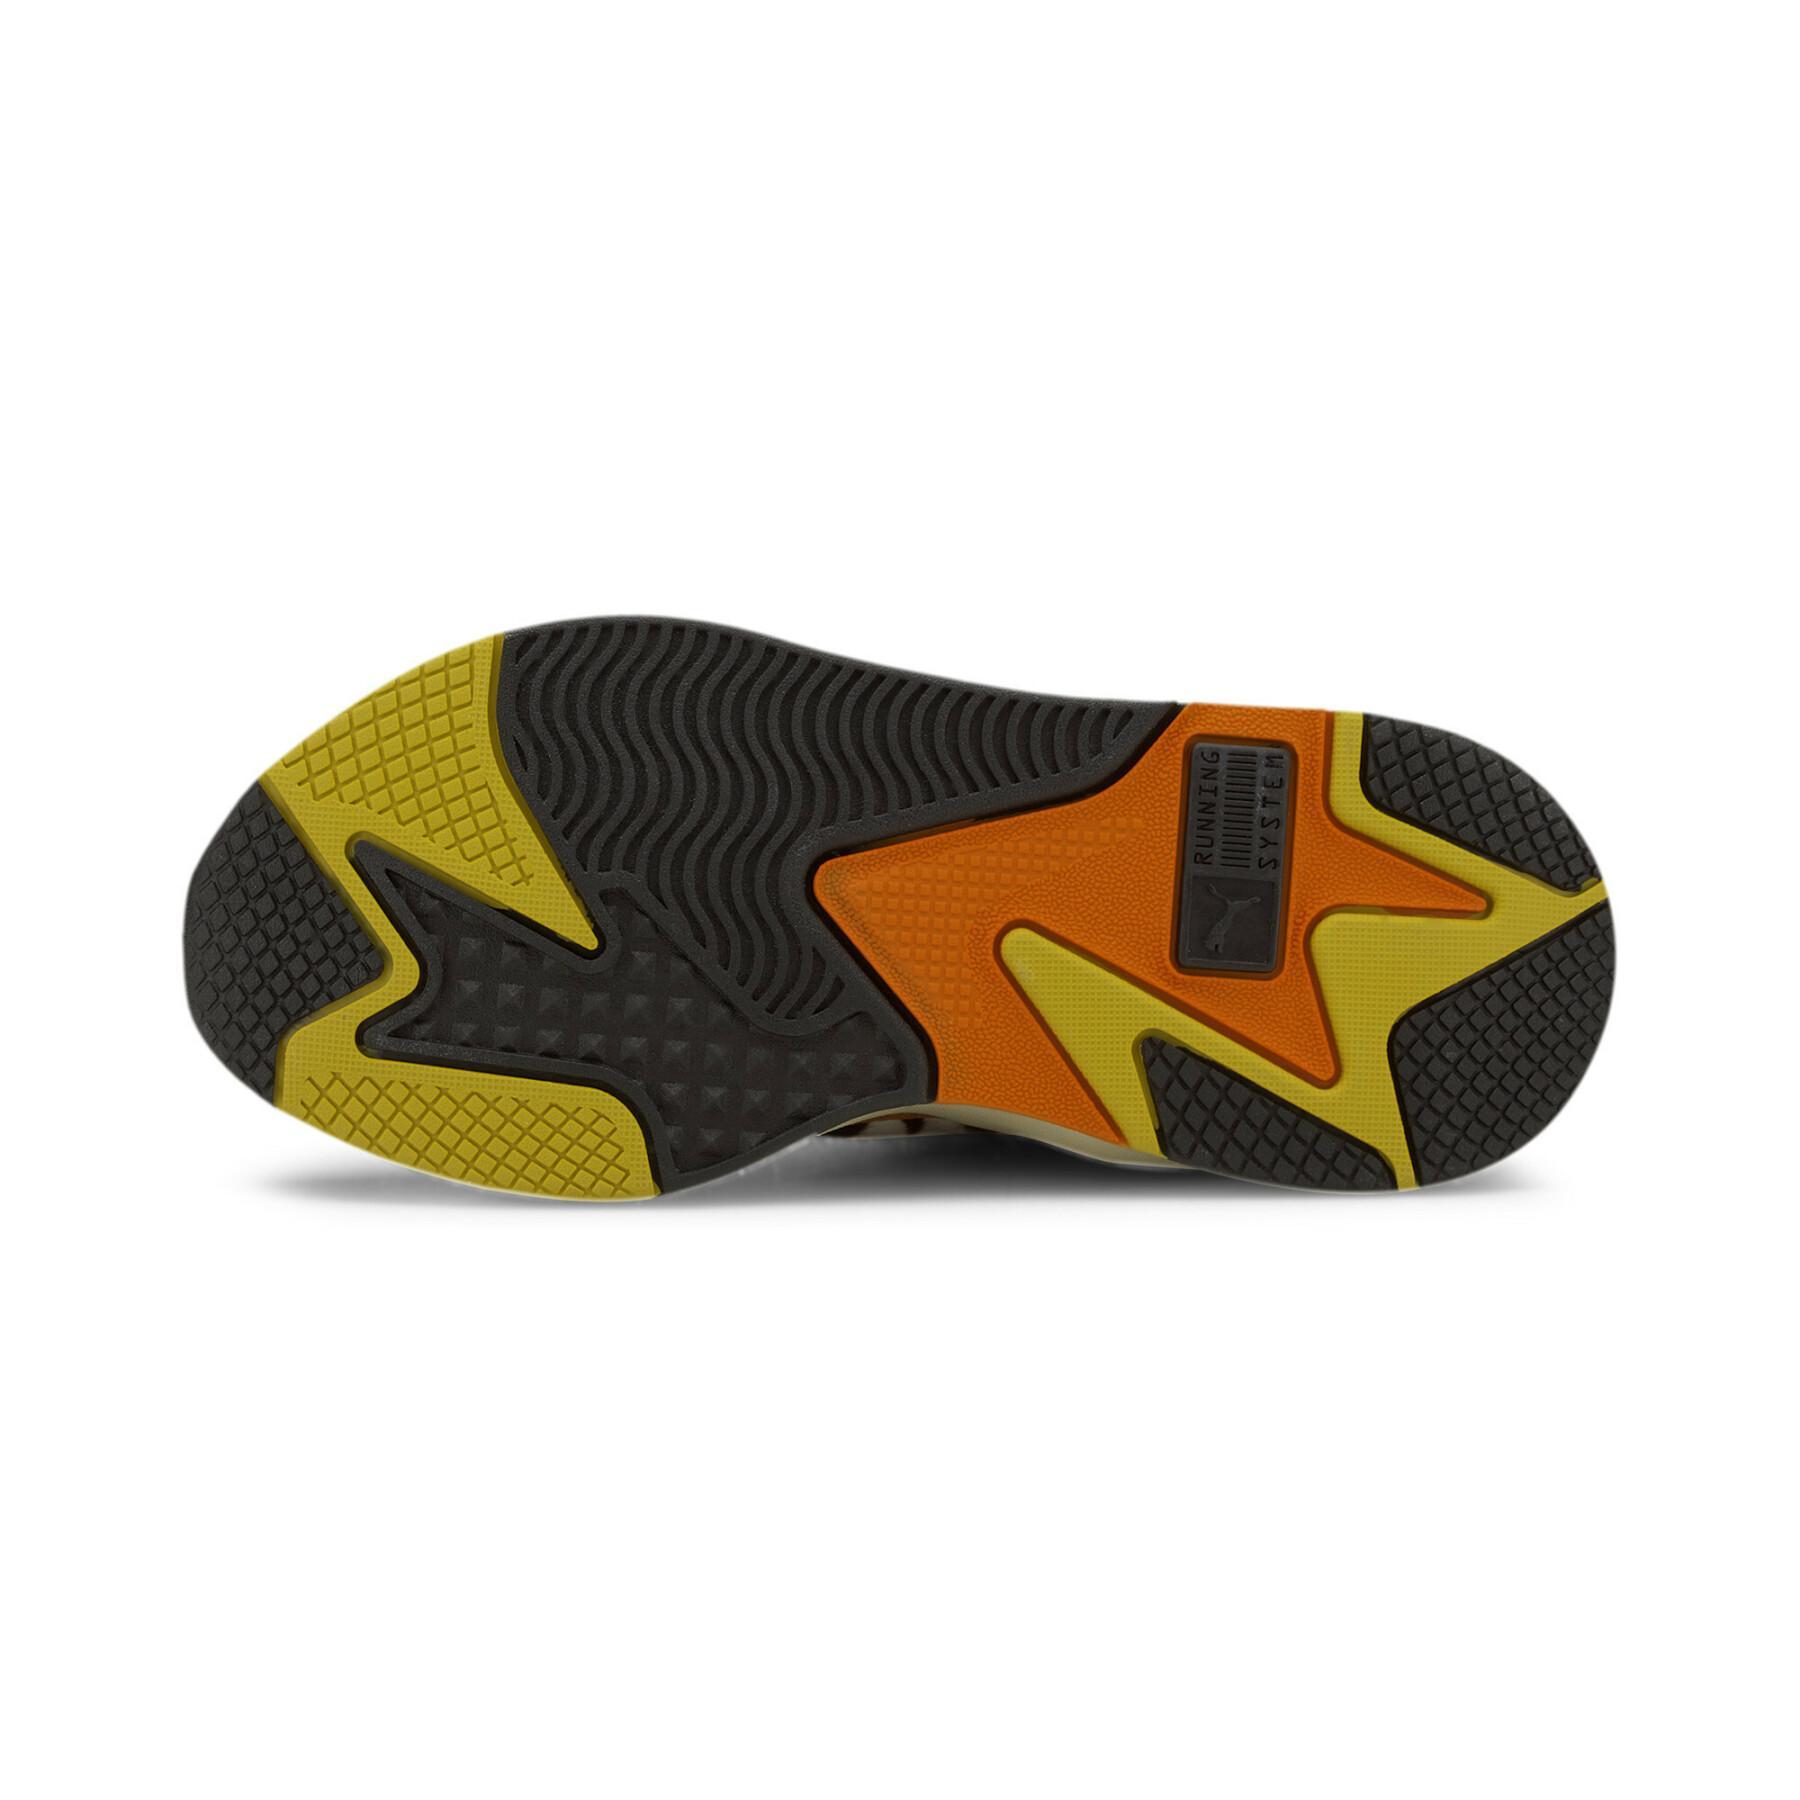 Zapatillas de deporte de mujer Puma RS-X³ W.Cats